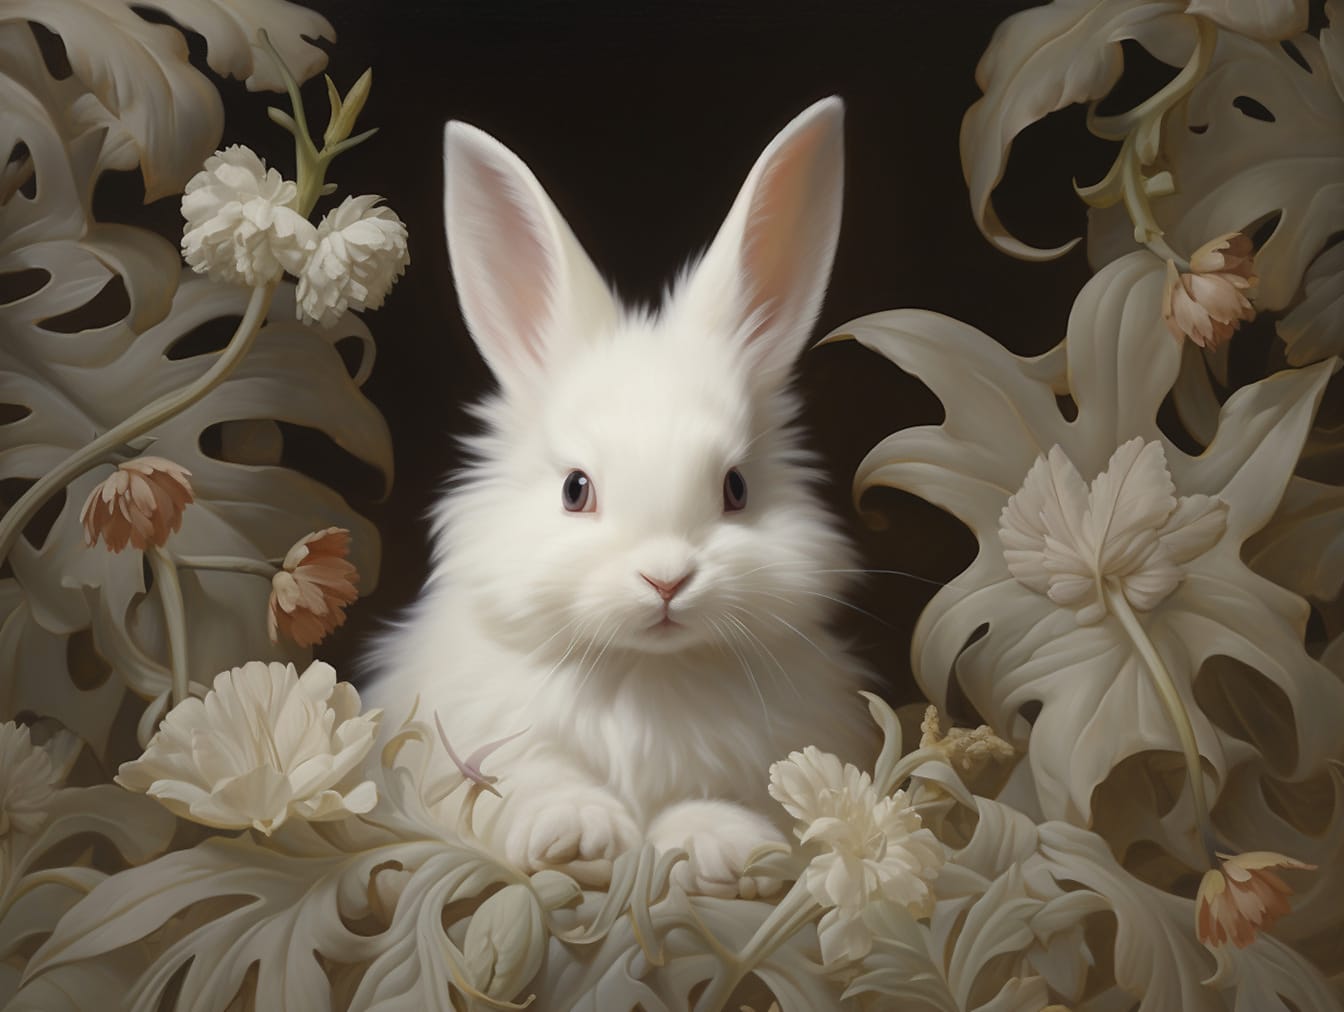 Büyük kulaklı sevimli tüylü tavşanın fotomontajı